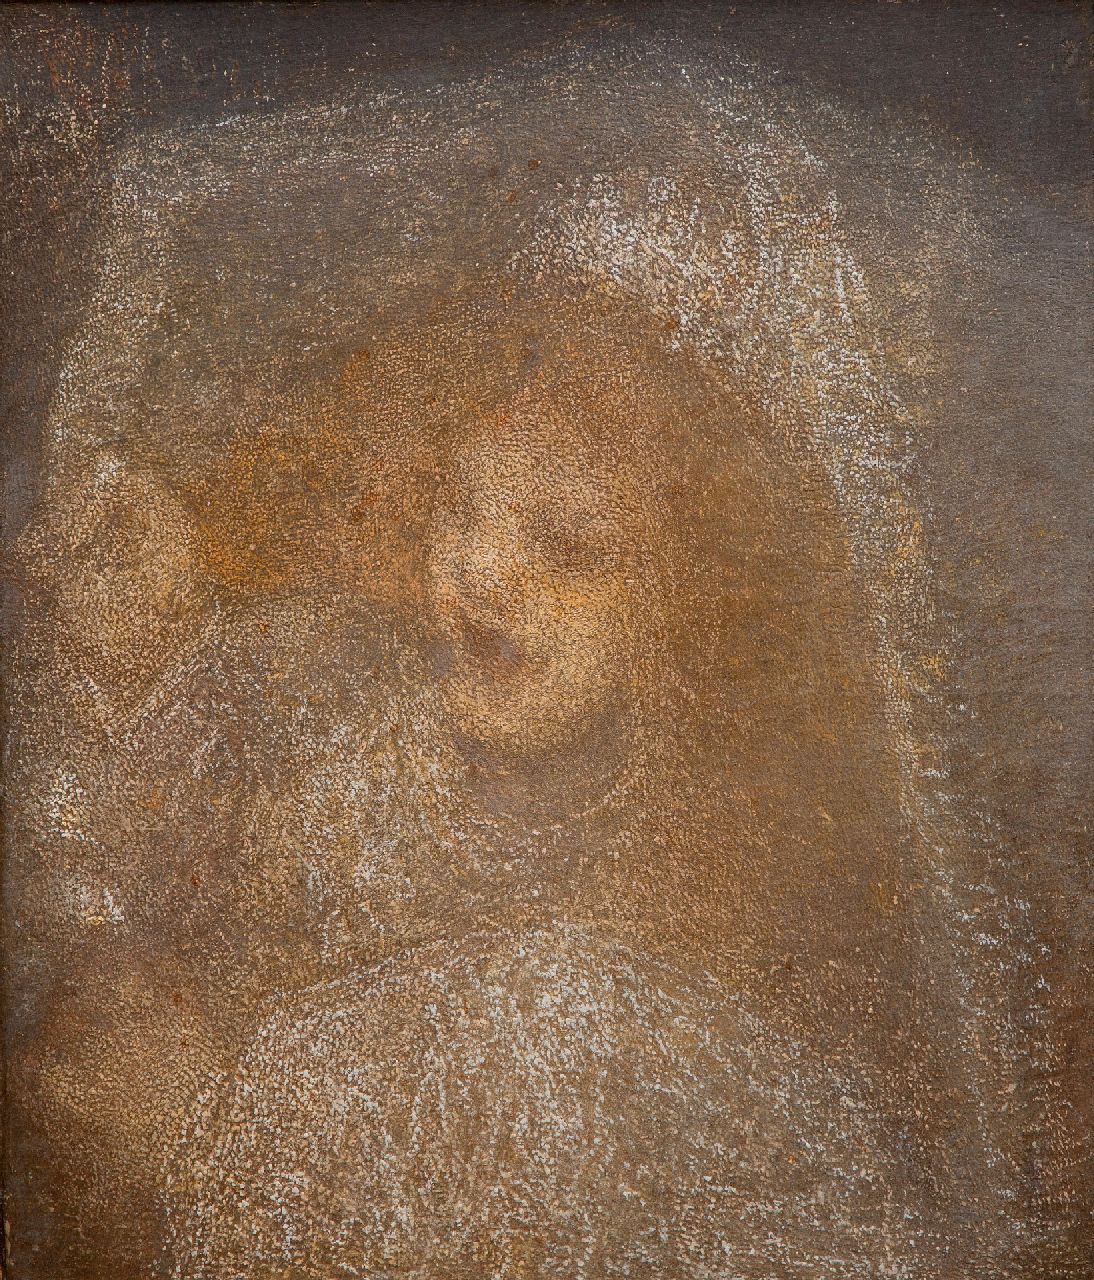 Maris M.  | Matthijs 'Thijs' Maris | Schilderijen te koop aangeboden | Meisje met bruidssluier, olieverf op doek 66,5 x 57,5 cm, te dateren ca. 1905-1915